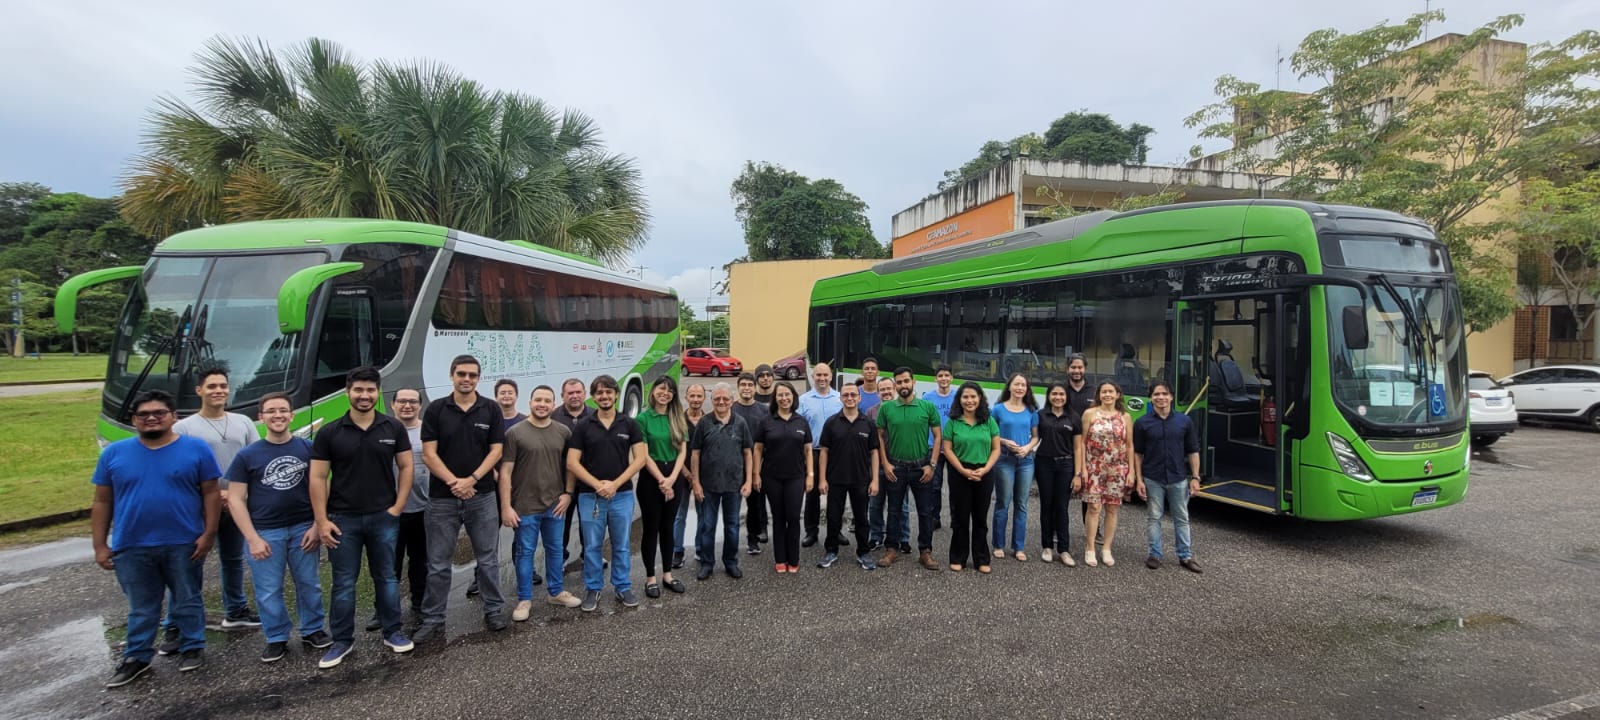 Imagem da equipe do ceamazon, reunida em frente aos dois ônibus elétricos do projeto sima